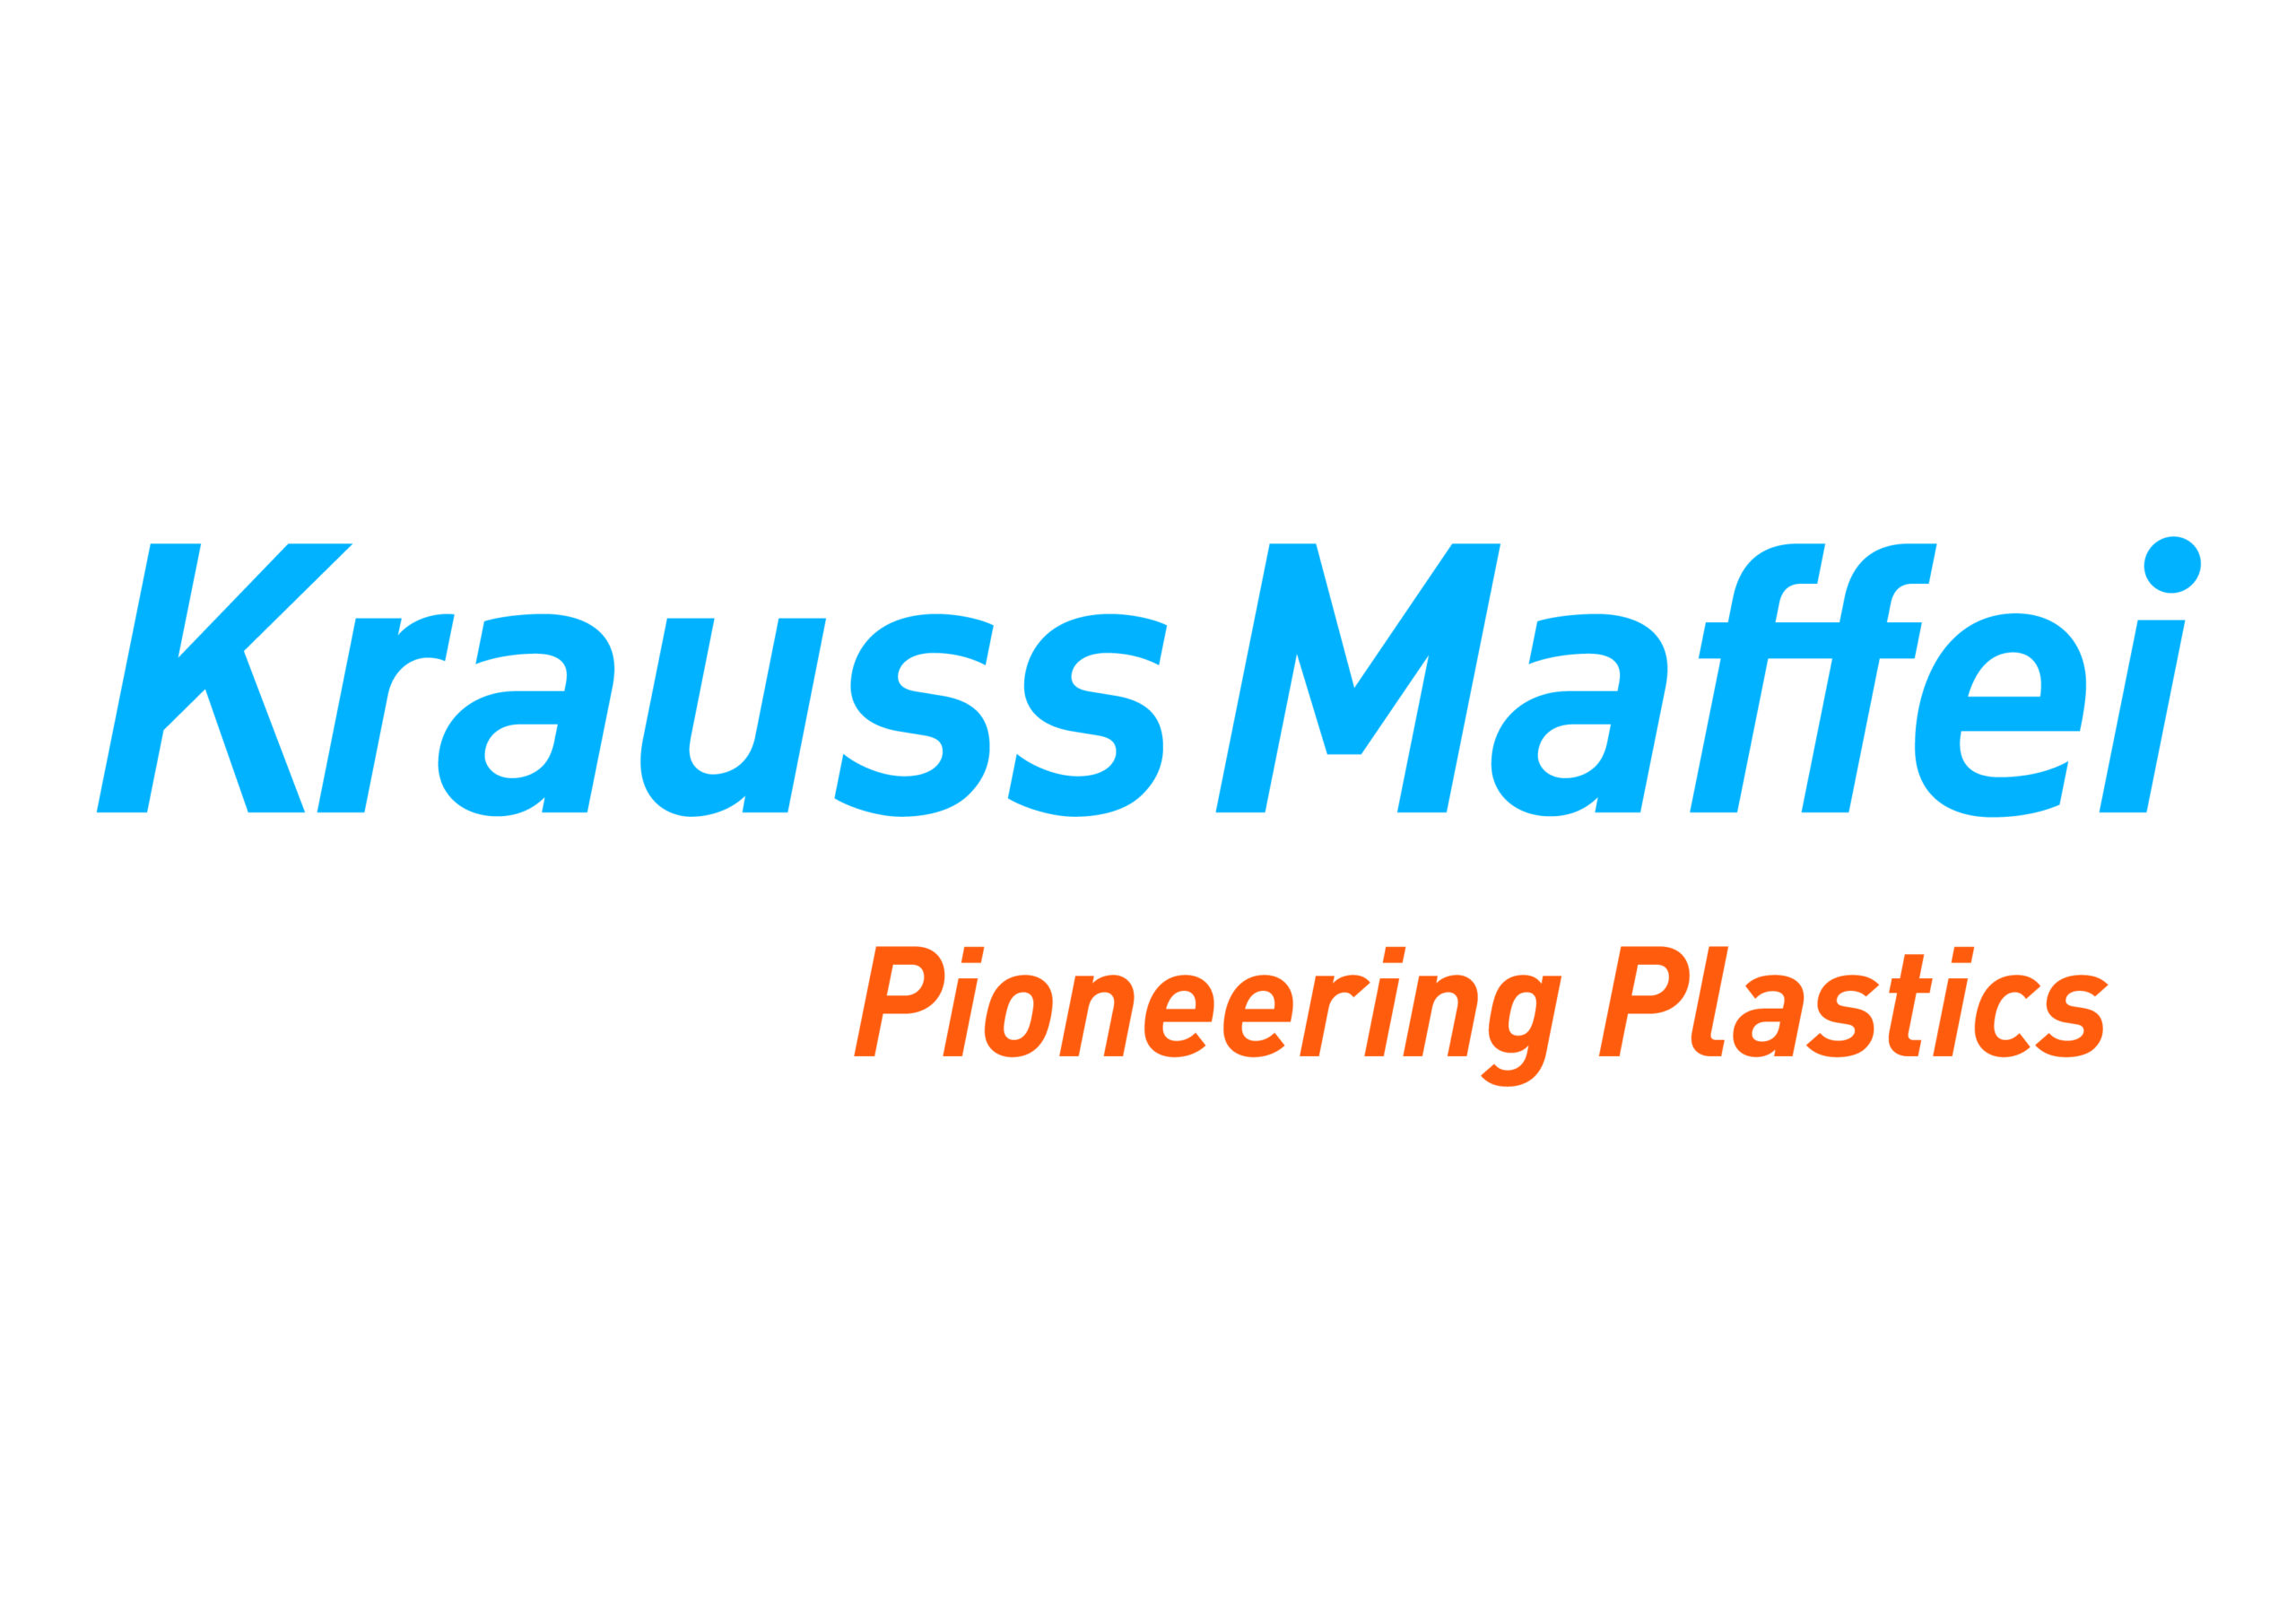 Krauss Maffei Pioneering Plastics